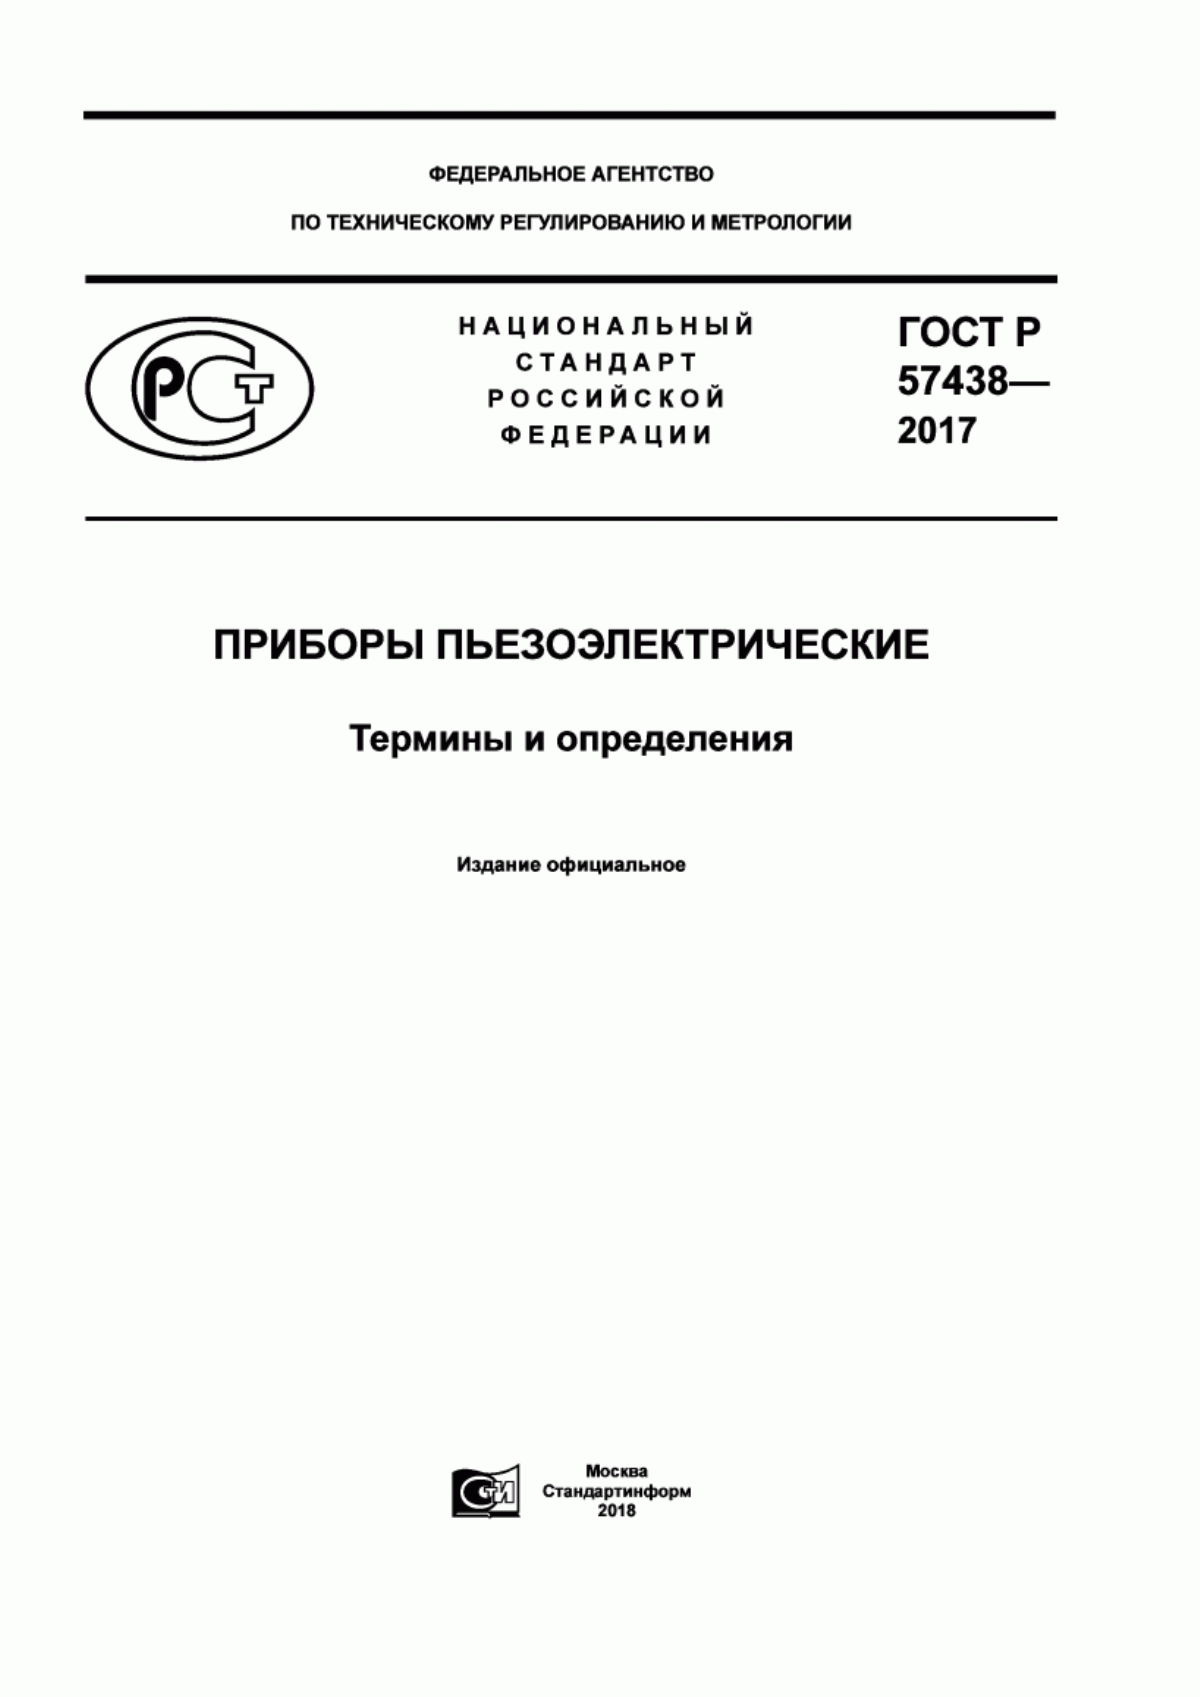 ГОСТ Р 57438-2017 Приборы пьезоэлектрические. Термины и определения